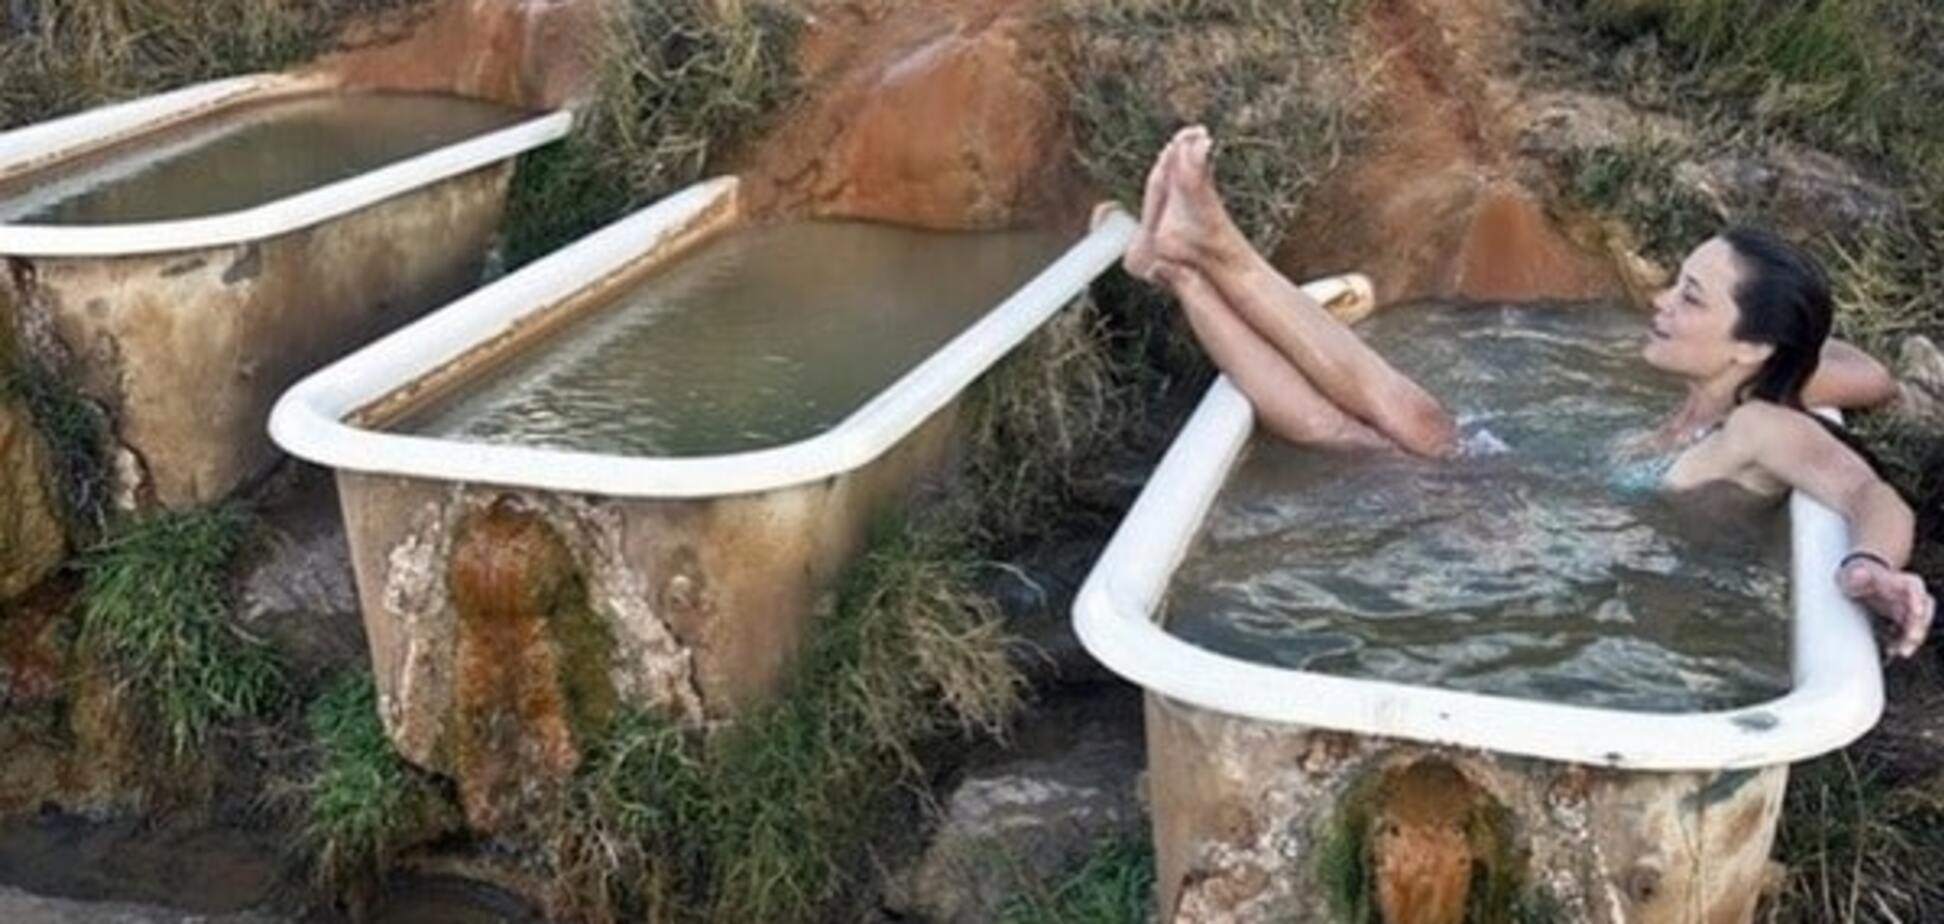 Минеральные ванны среди пустыни: фантастические фото